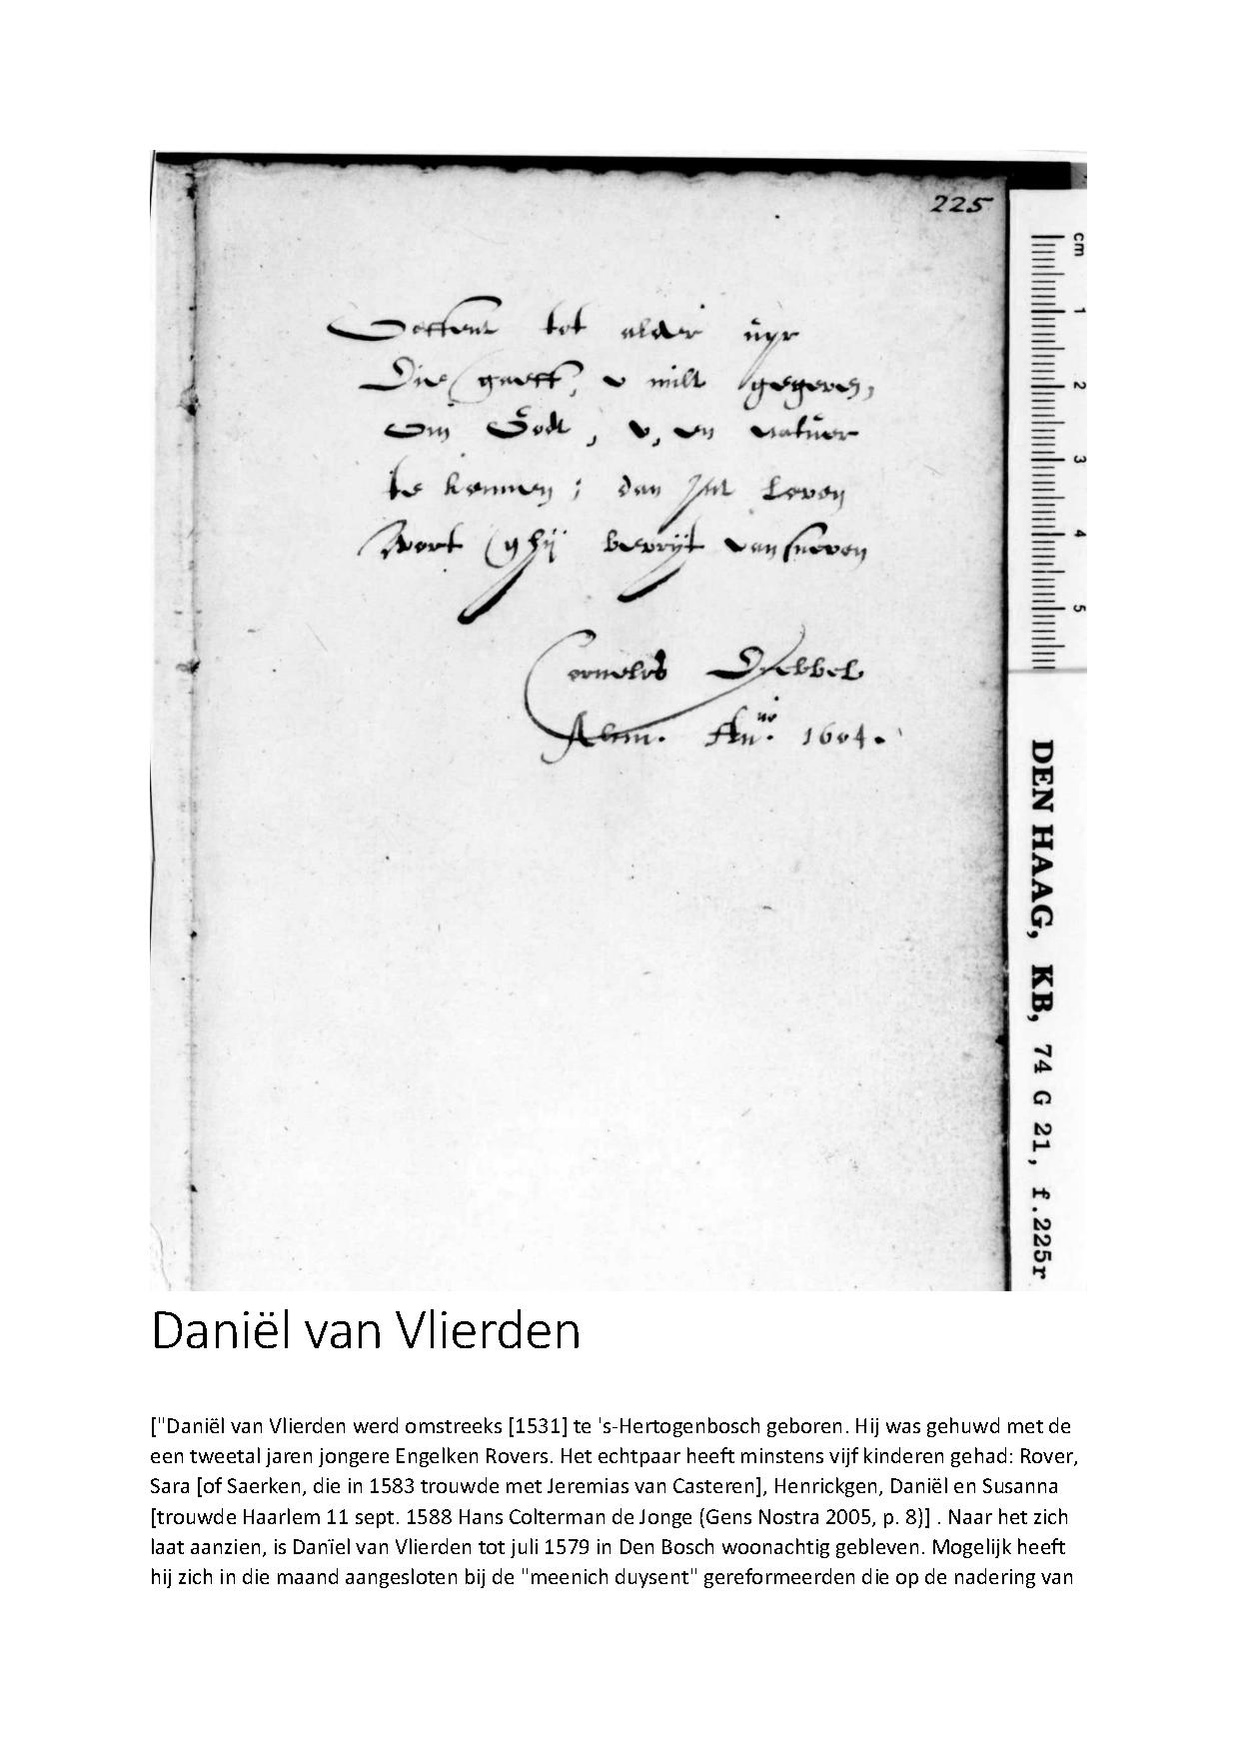 Daniel van Vlierden